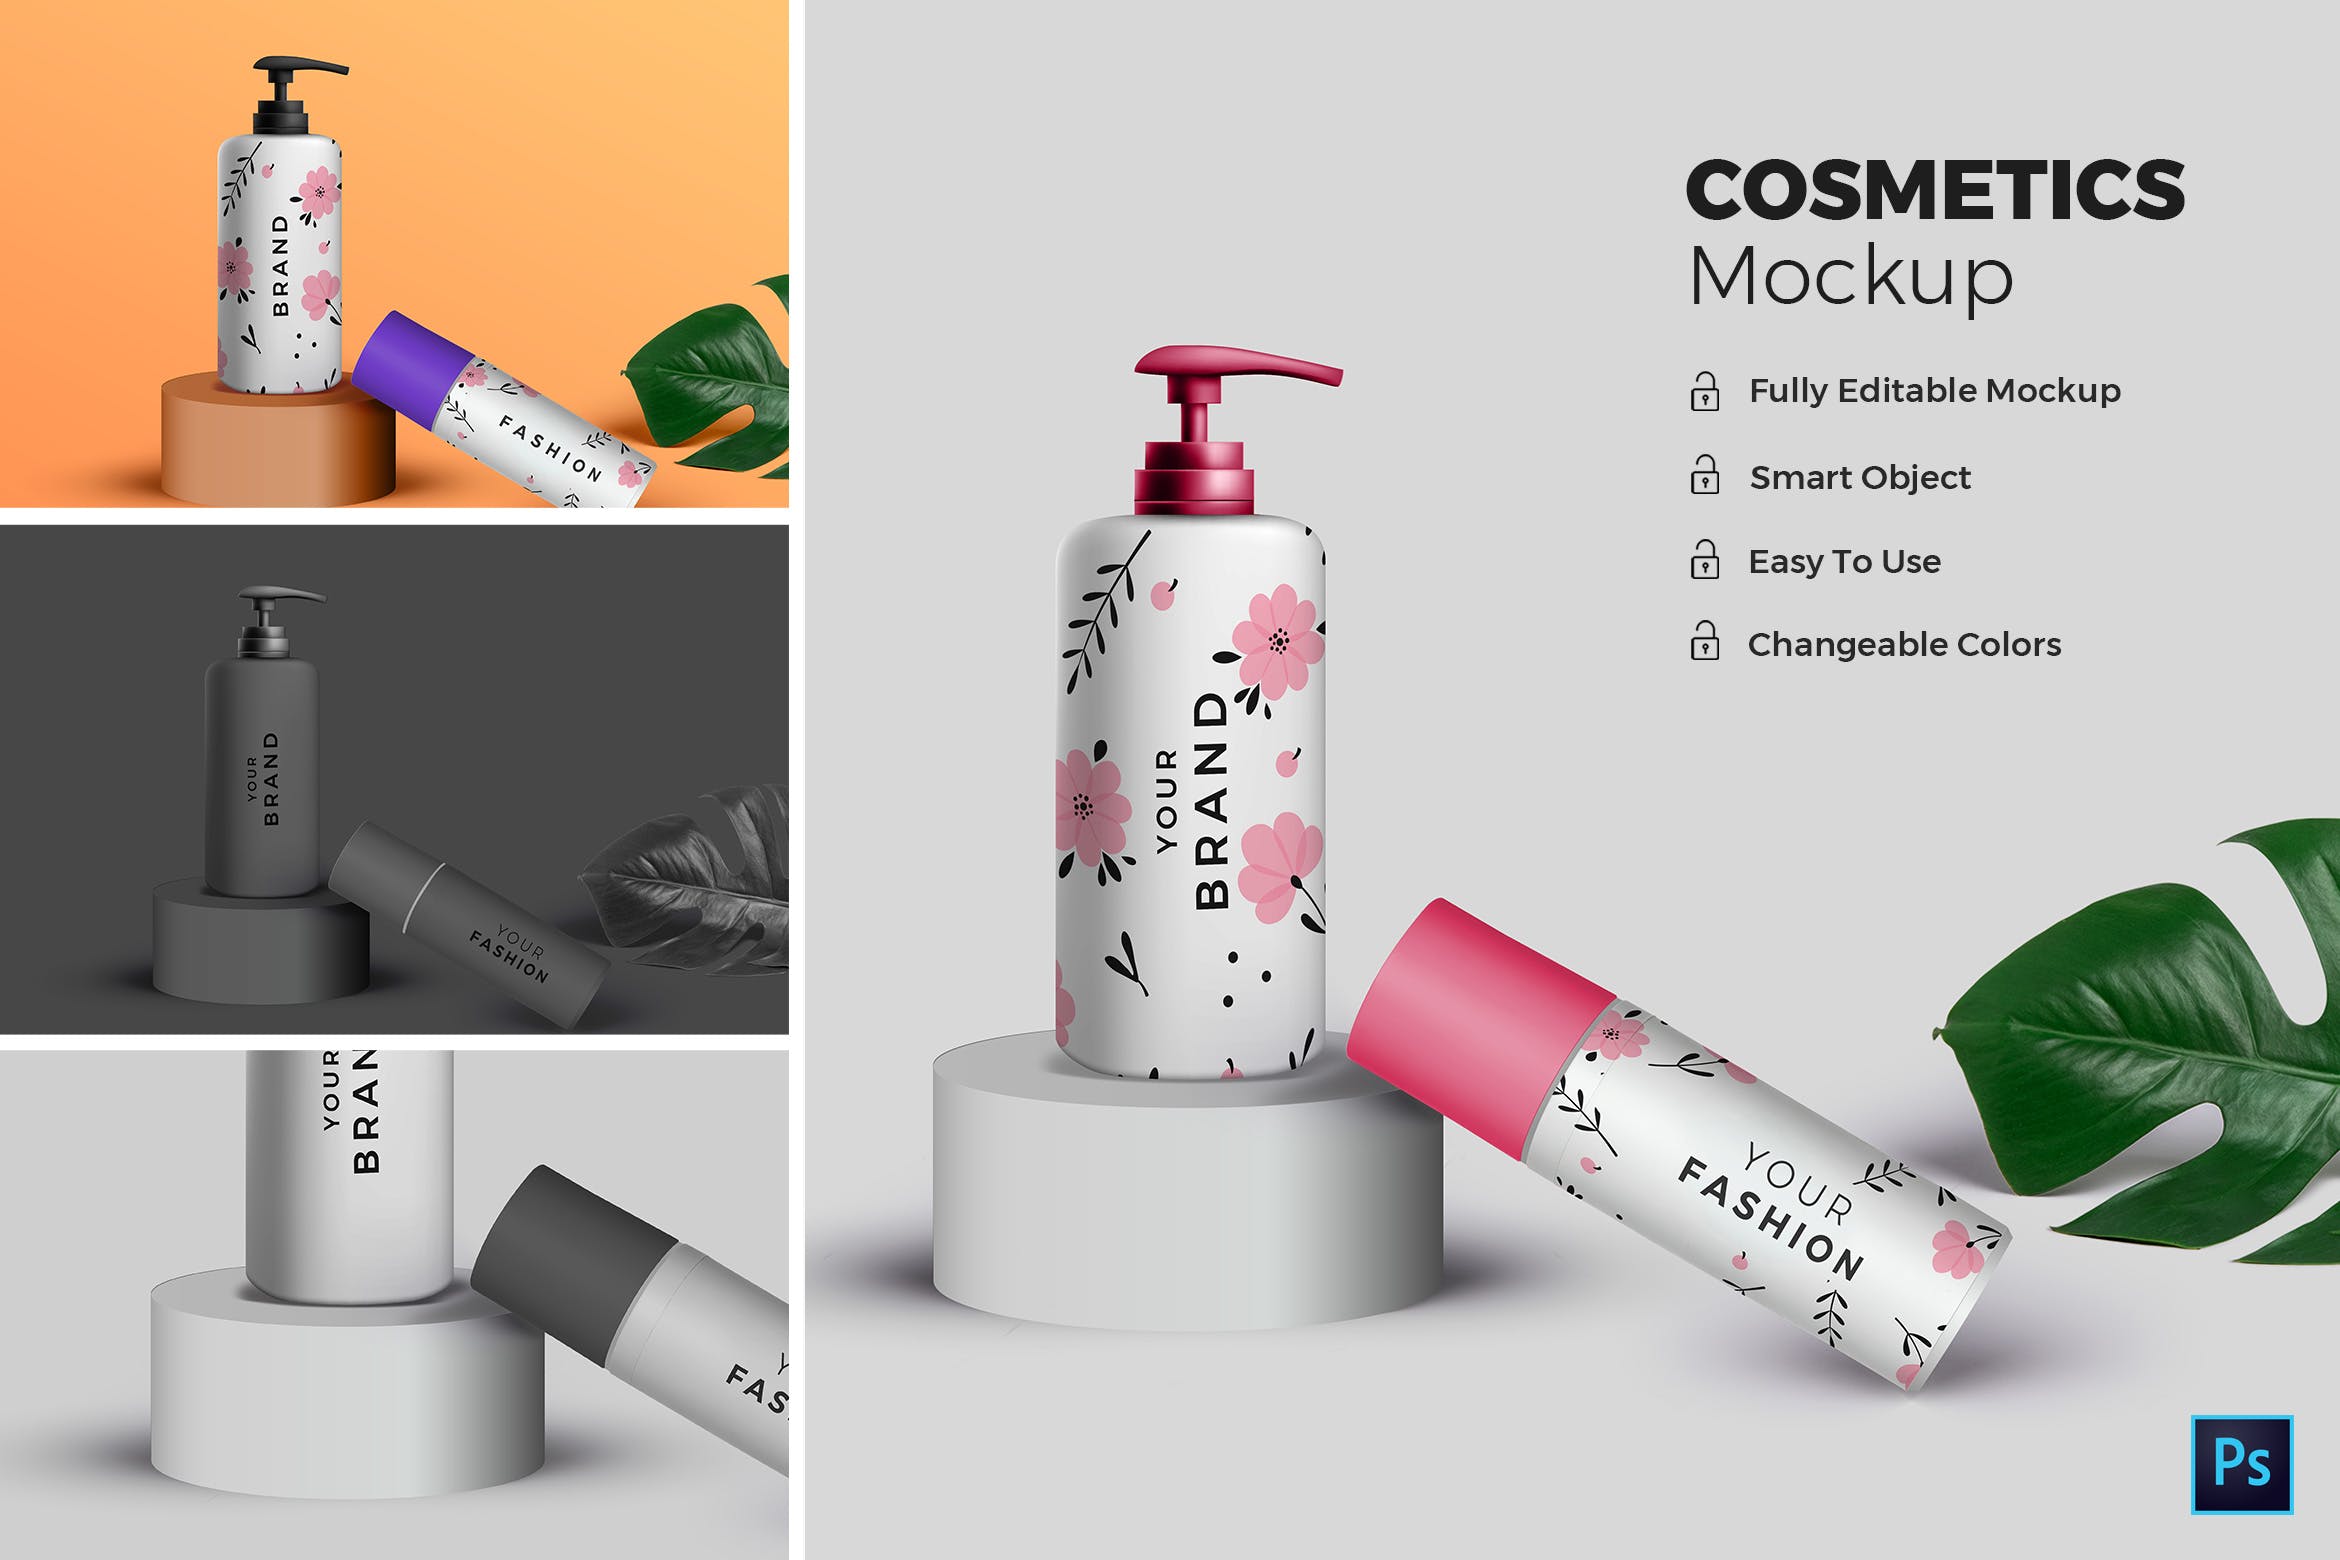 高端化妆品包装外观设计效果图第一素材精选 Cosmetic Mockup插图